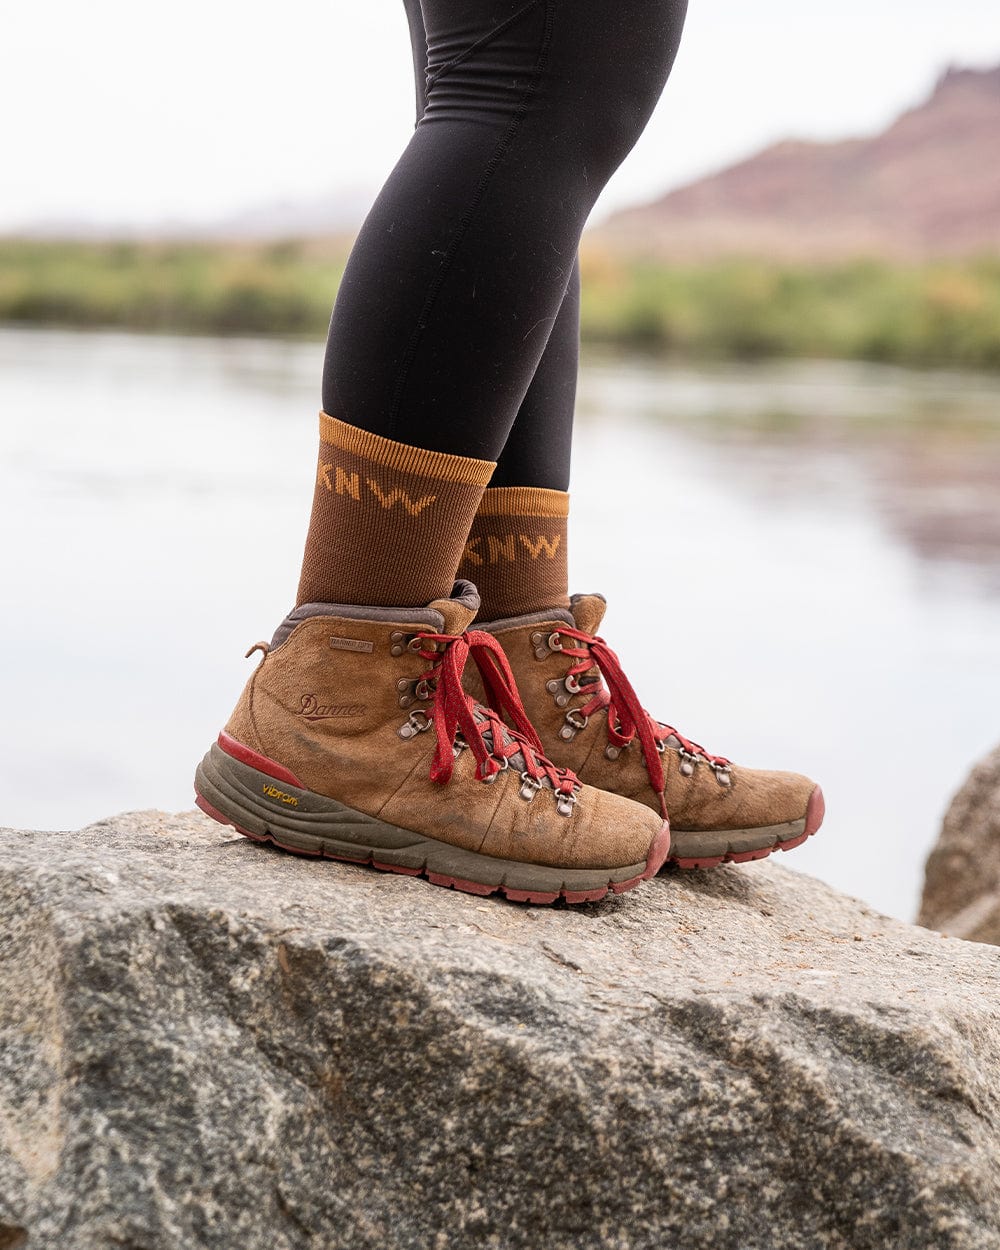 Keep Nature Wild Socks Camp & Trail Mid Socks | Russet